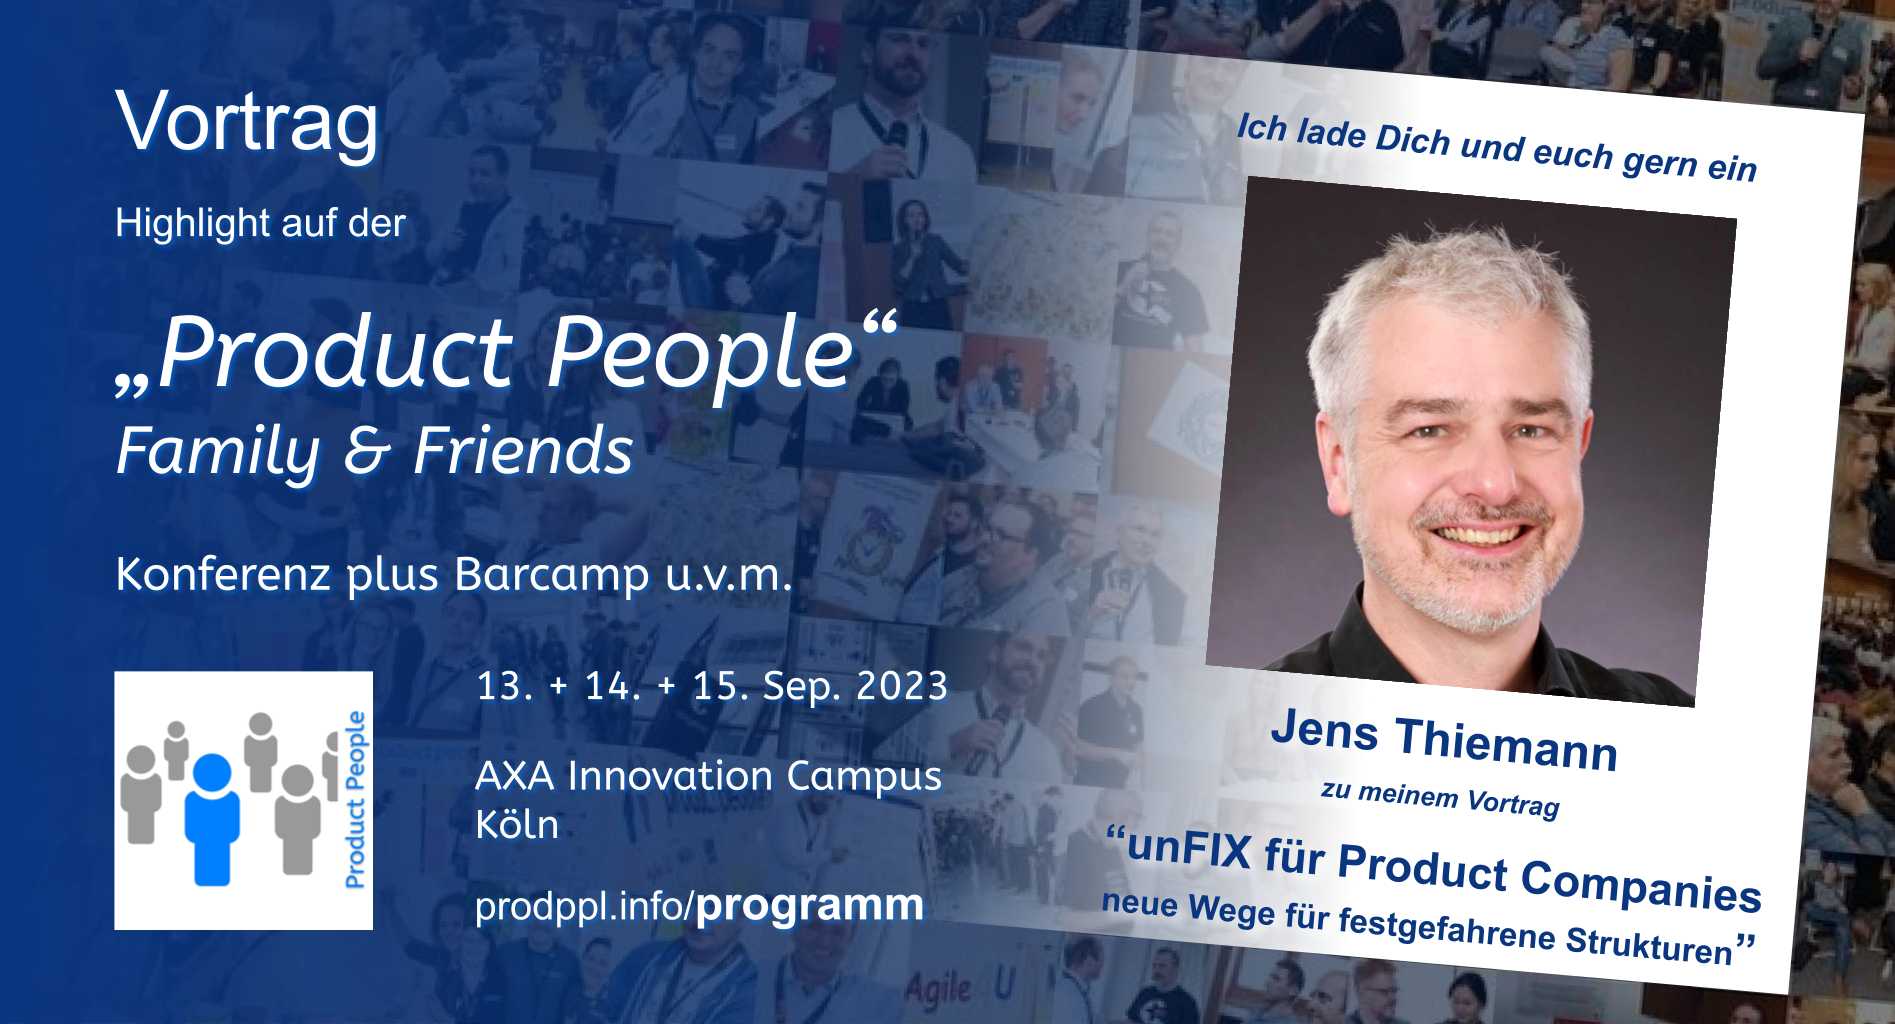 "unFIX für Product Companies - neue Wege für festgefahrene Strukturen" - M-Vortrag von und mit Jens Thiemann - auf der 'Product People - Family & Friends' - Konferenz plus Barcamp - Köln 2023